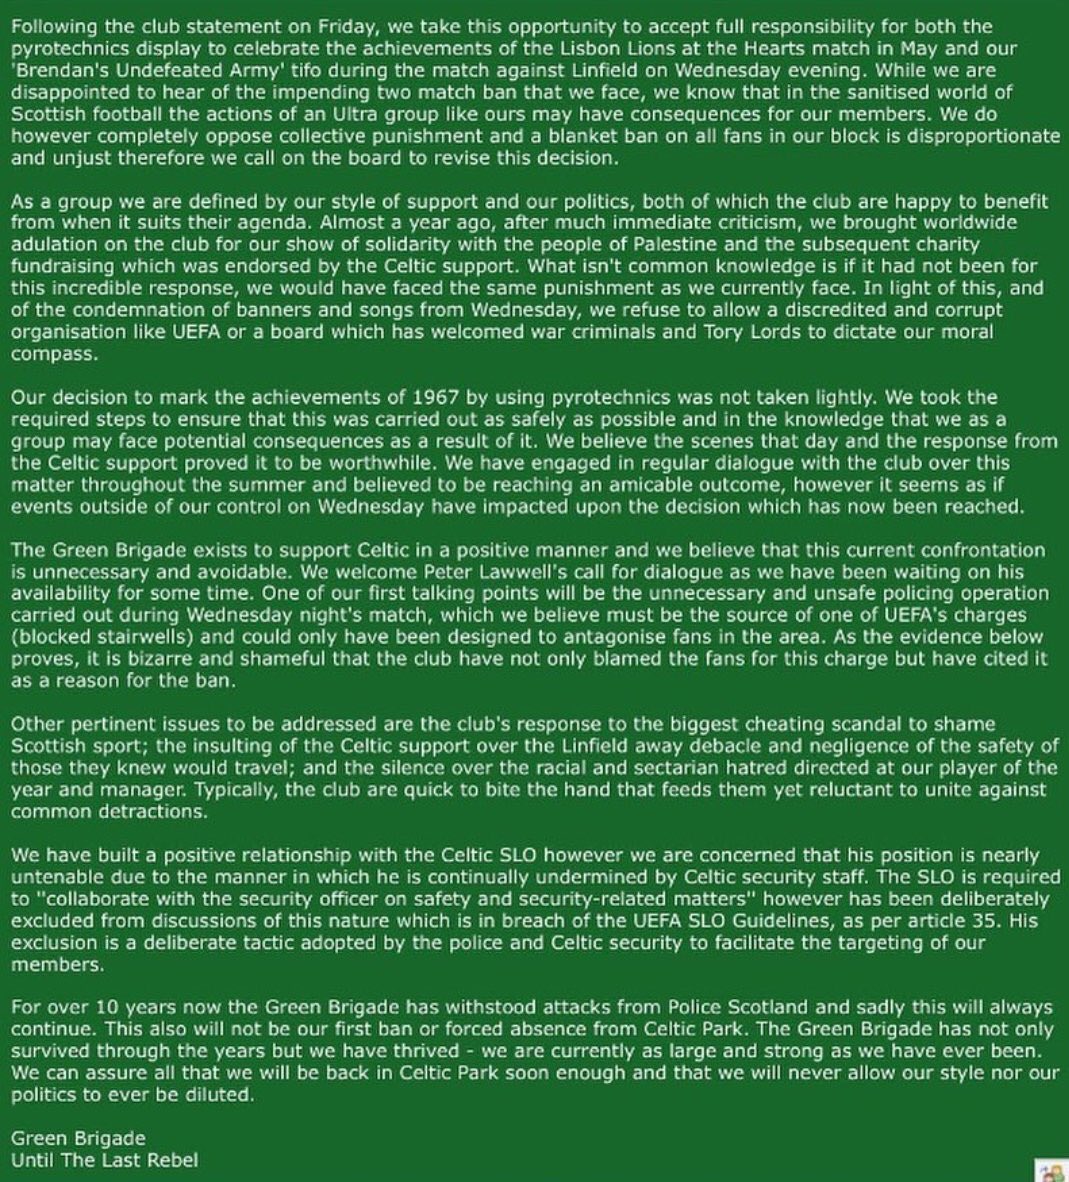 Green Brigade statement